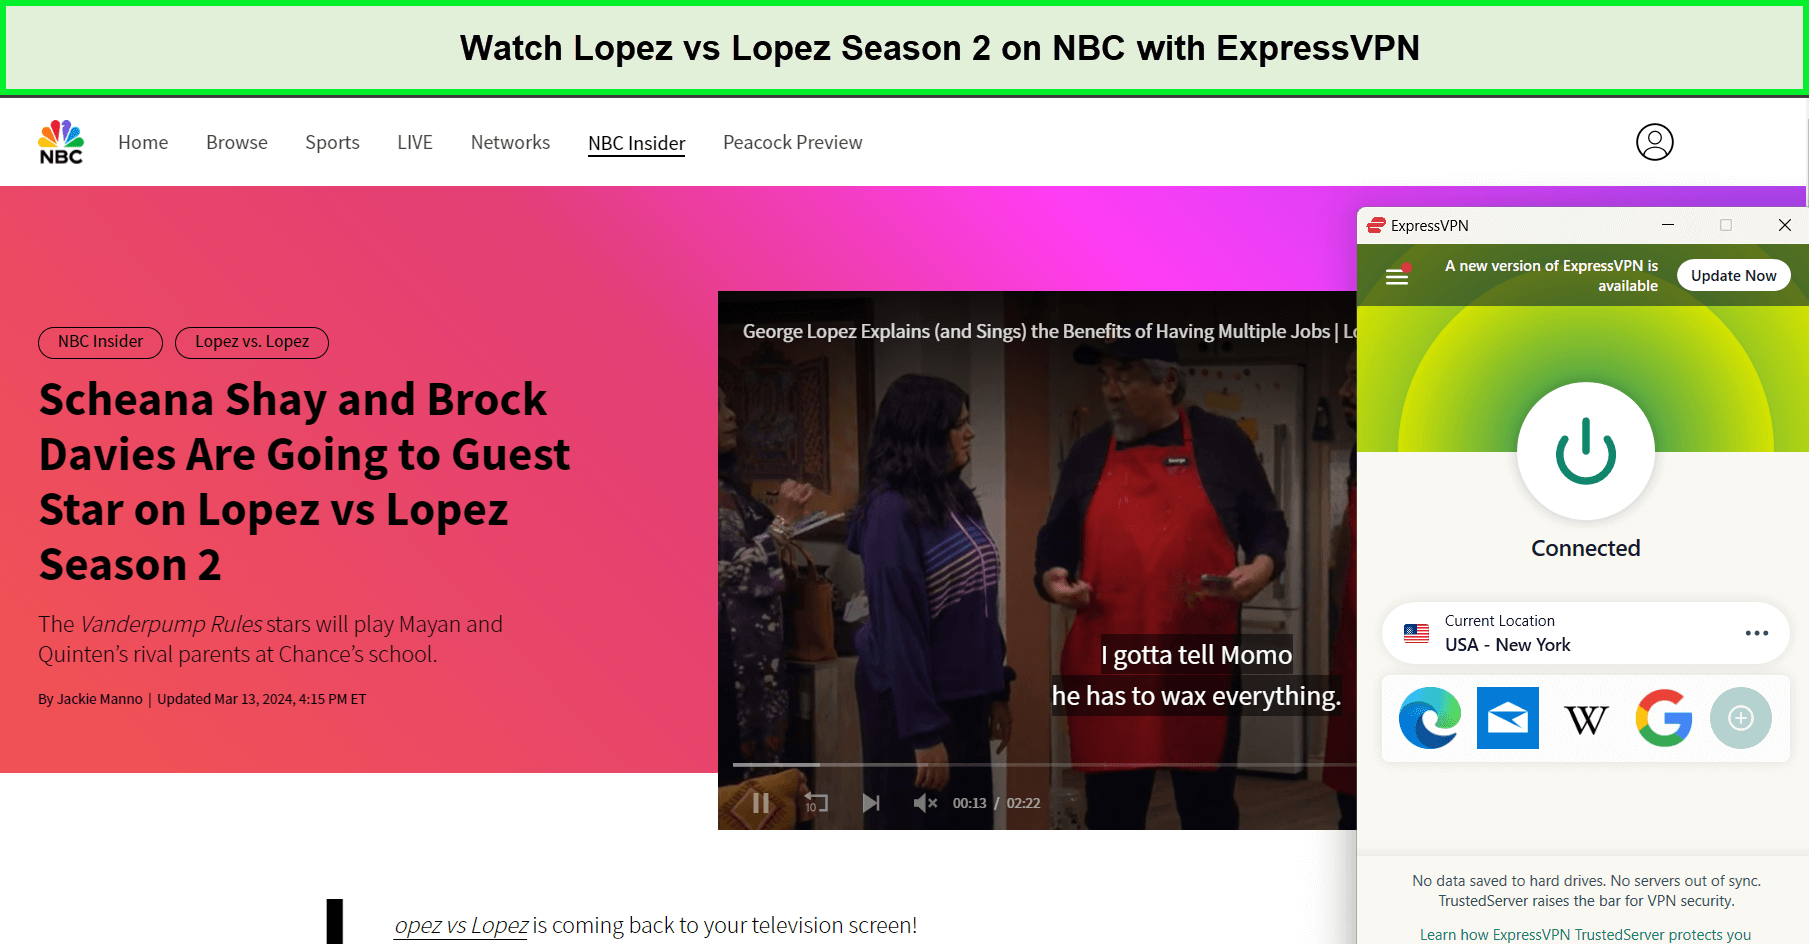 Watch-Lopez-vs-Lopez-Season-2-outside-USA-on-NBC